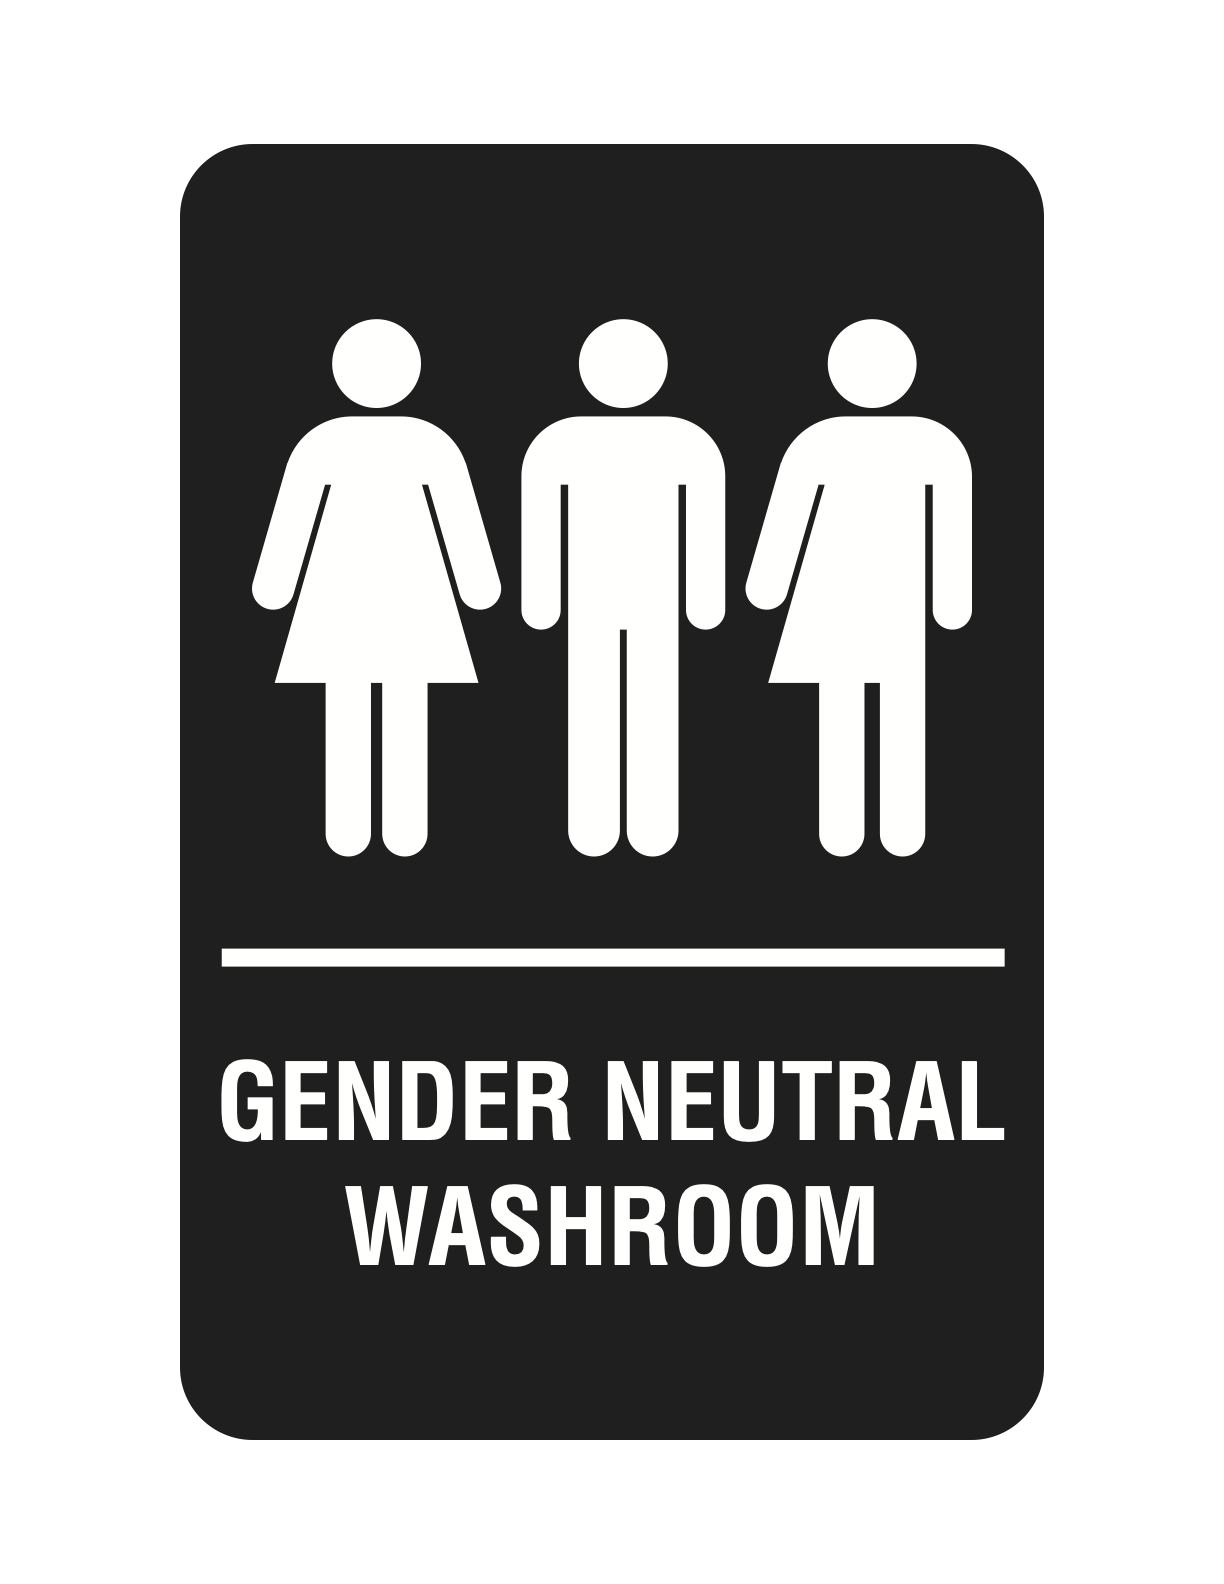 6x9in Gender Neutral Washroom Sign web.png